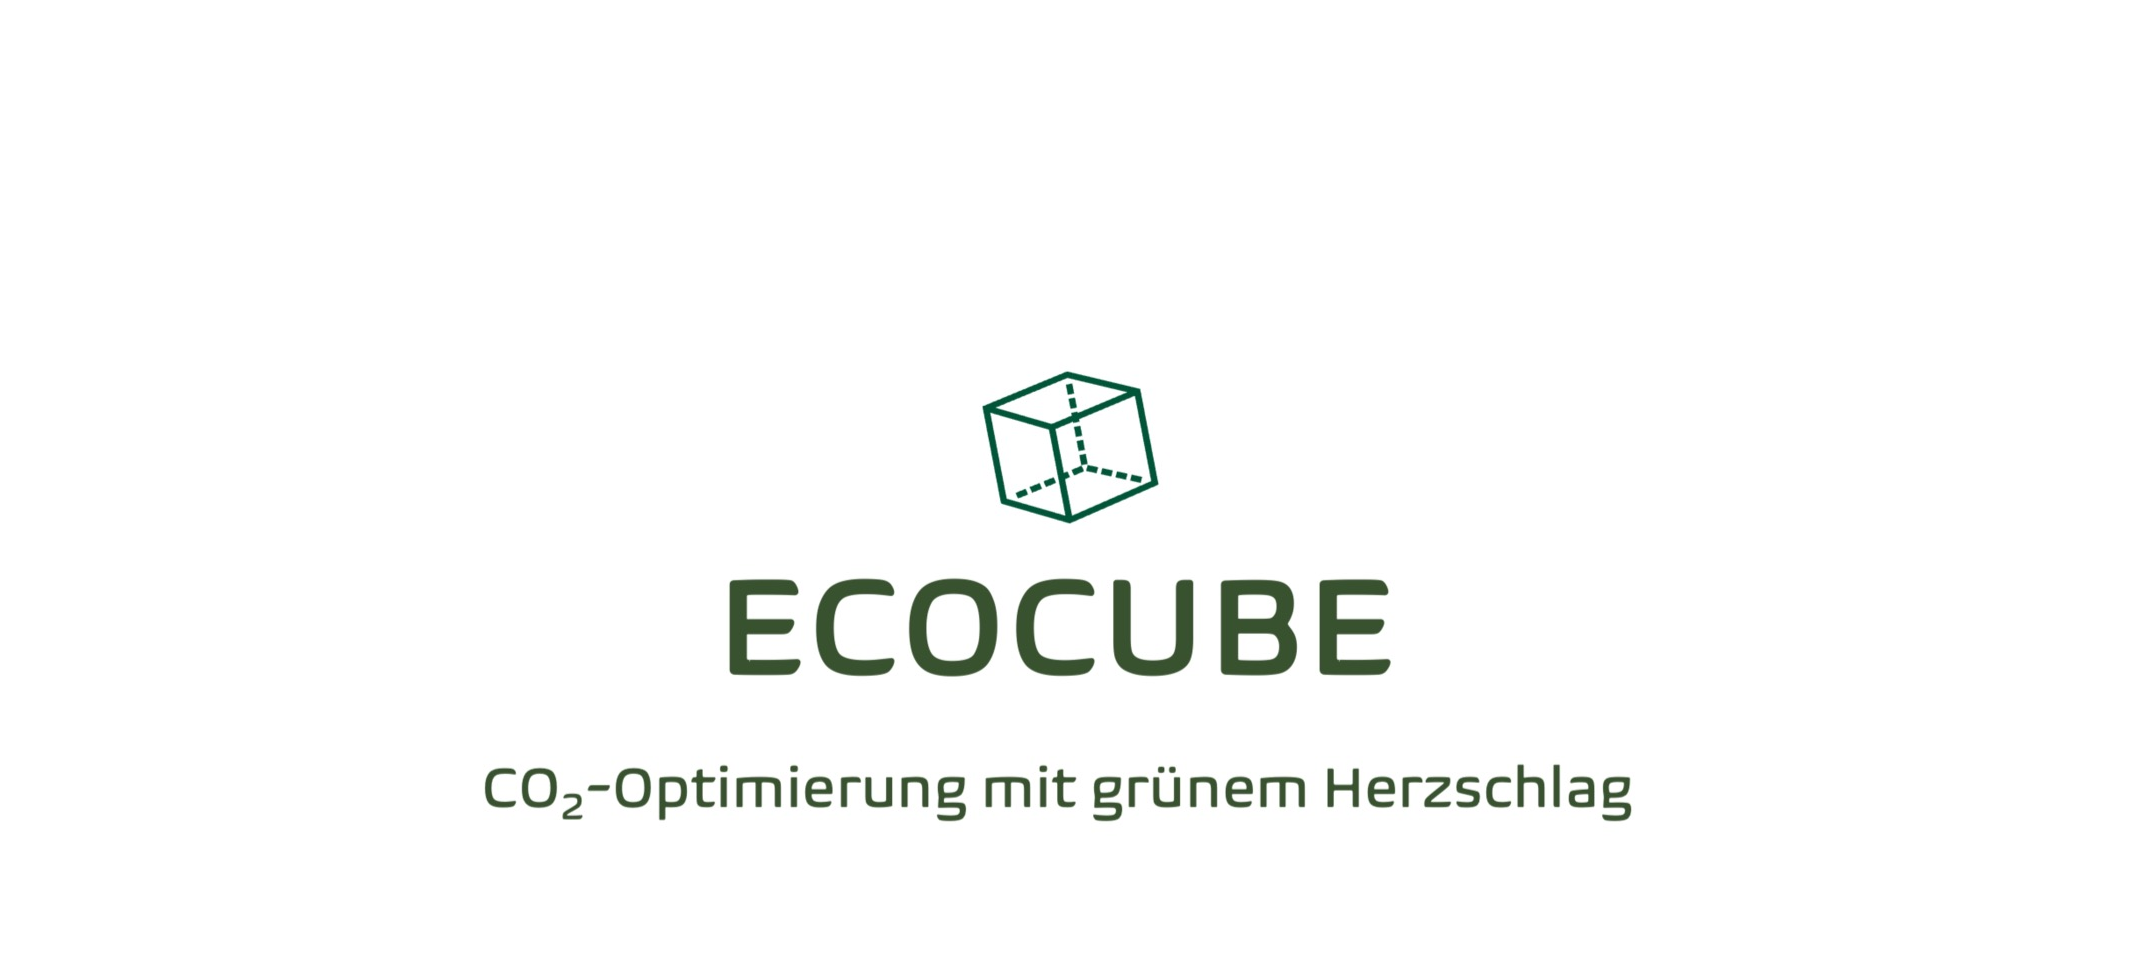 Ecocube CO2-Optimierung